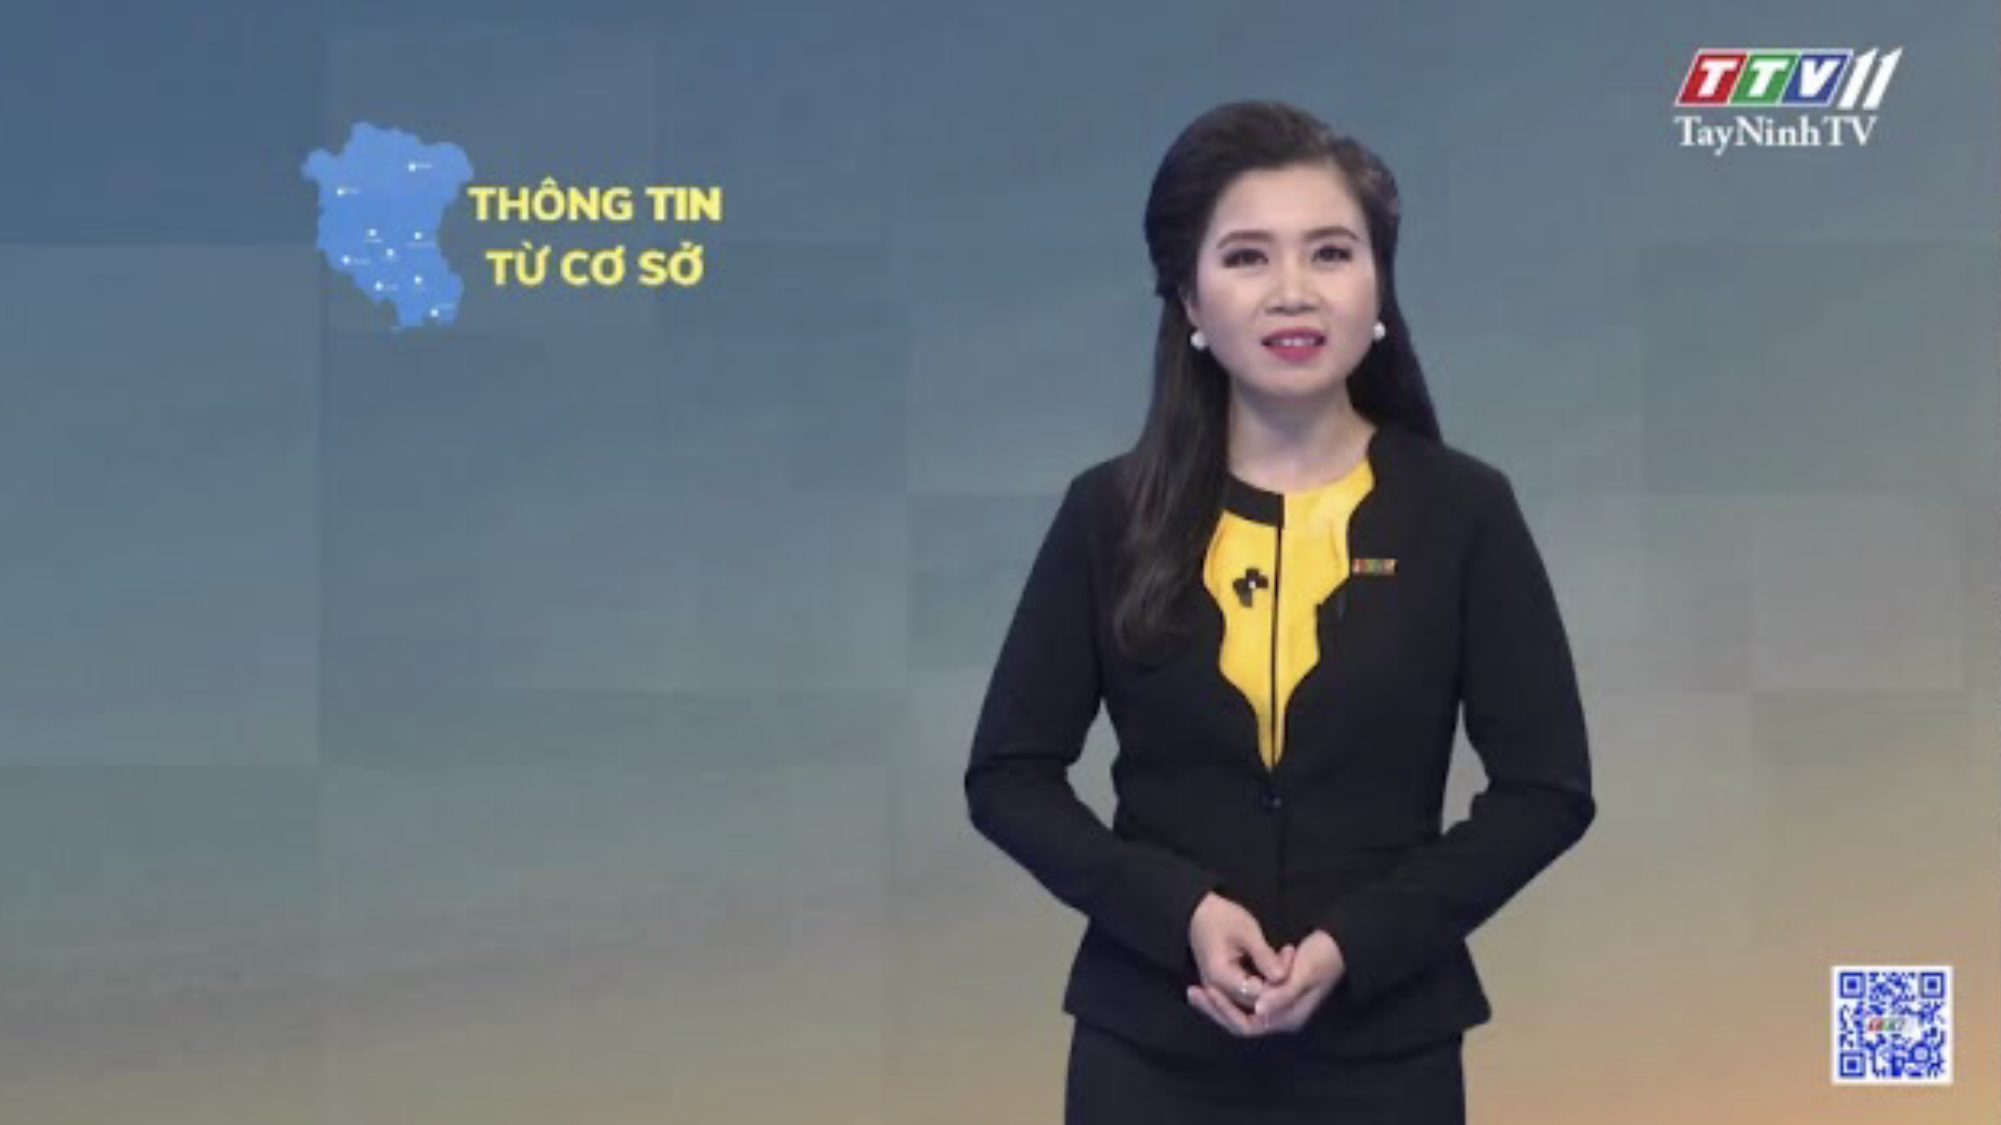 Hiệu quả thiết thực từ công tác cải cách hành chính ở Huyện Dương Minh Châu| Thông tin từ cơ sở | TayNinhTV